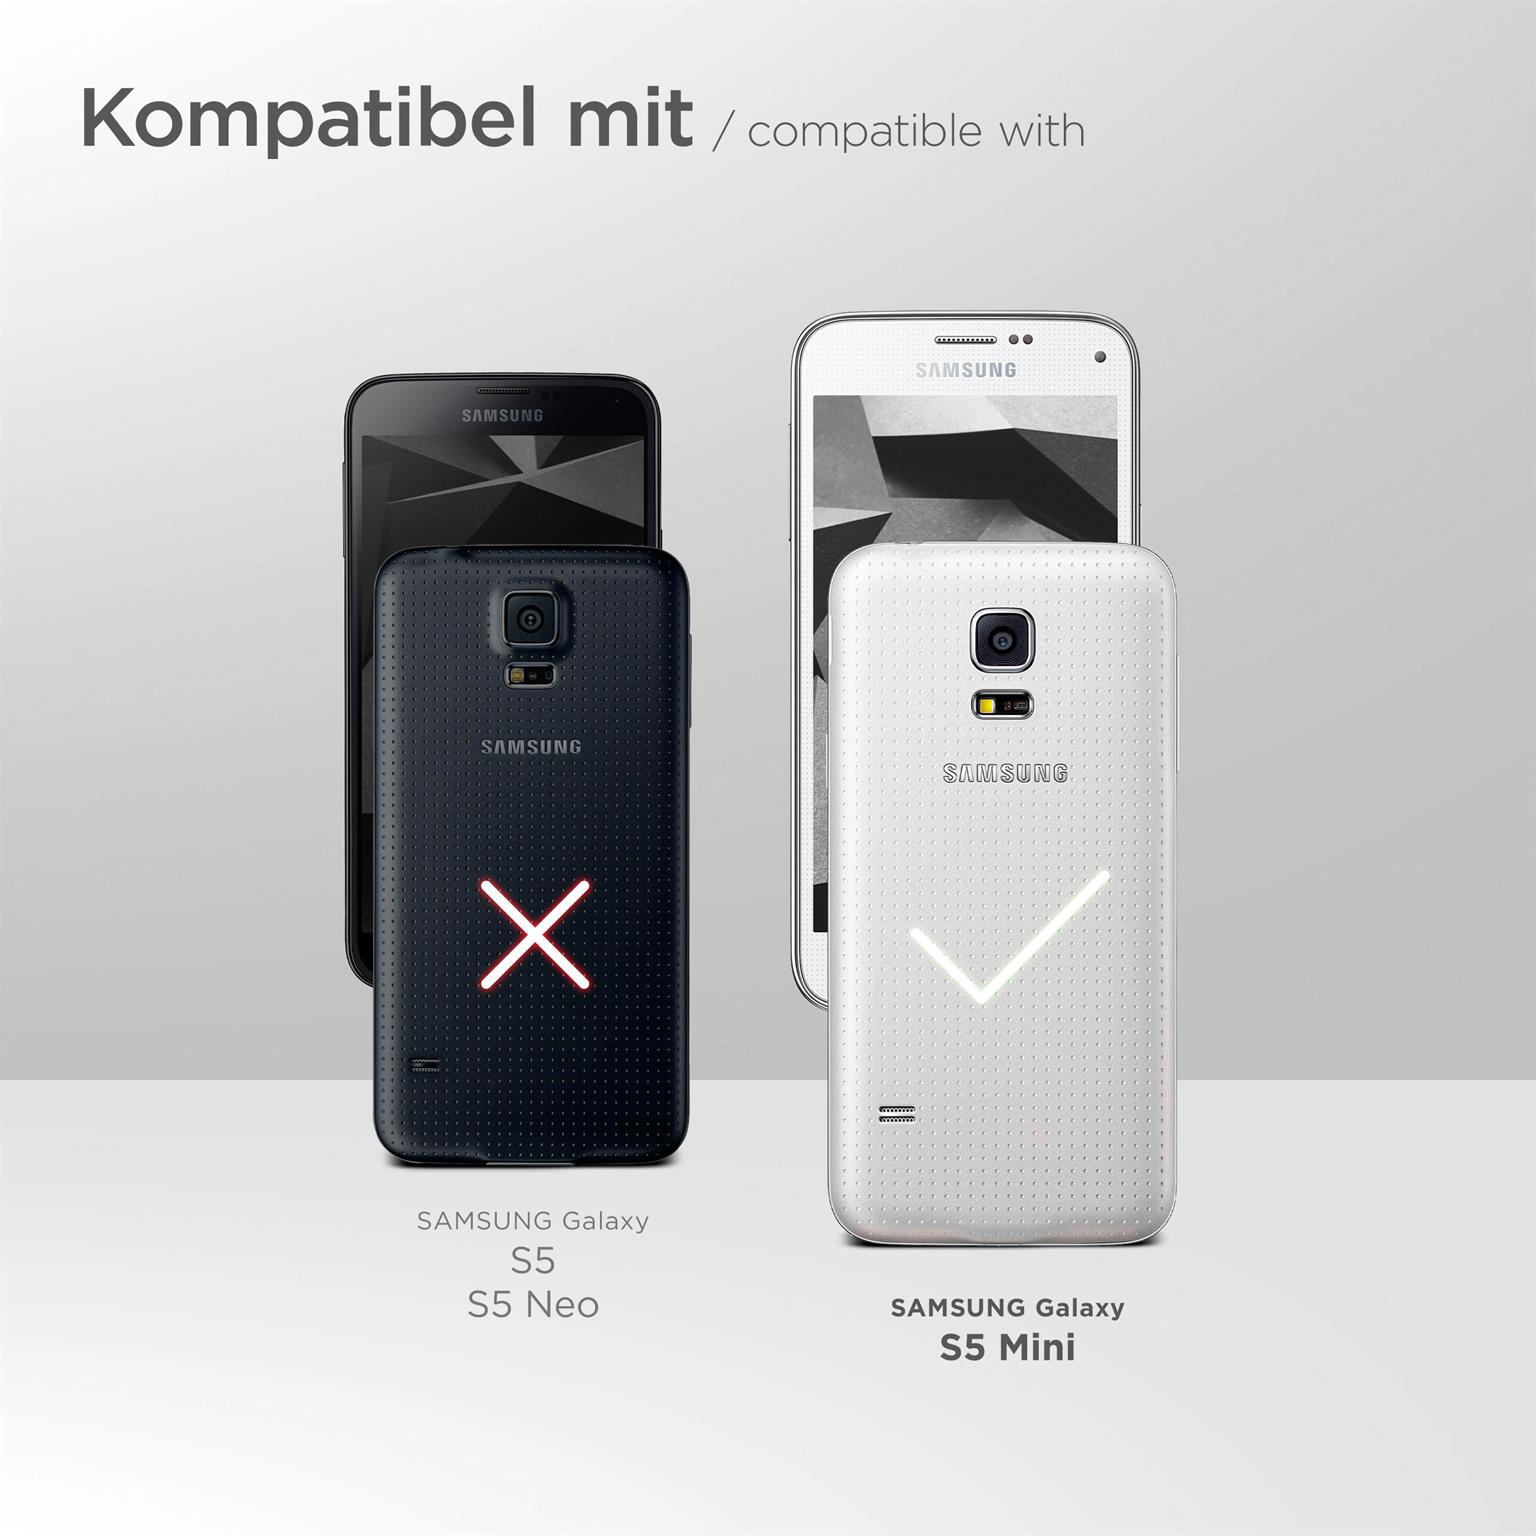 moex Purse Case für Samsung Galaxy S5 Mini – Handytasche mit Geldbörses aus PU Leder, Geld- & Handyfach